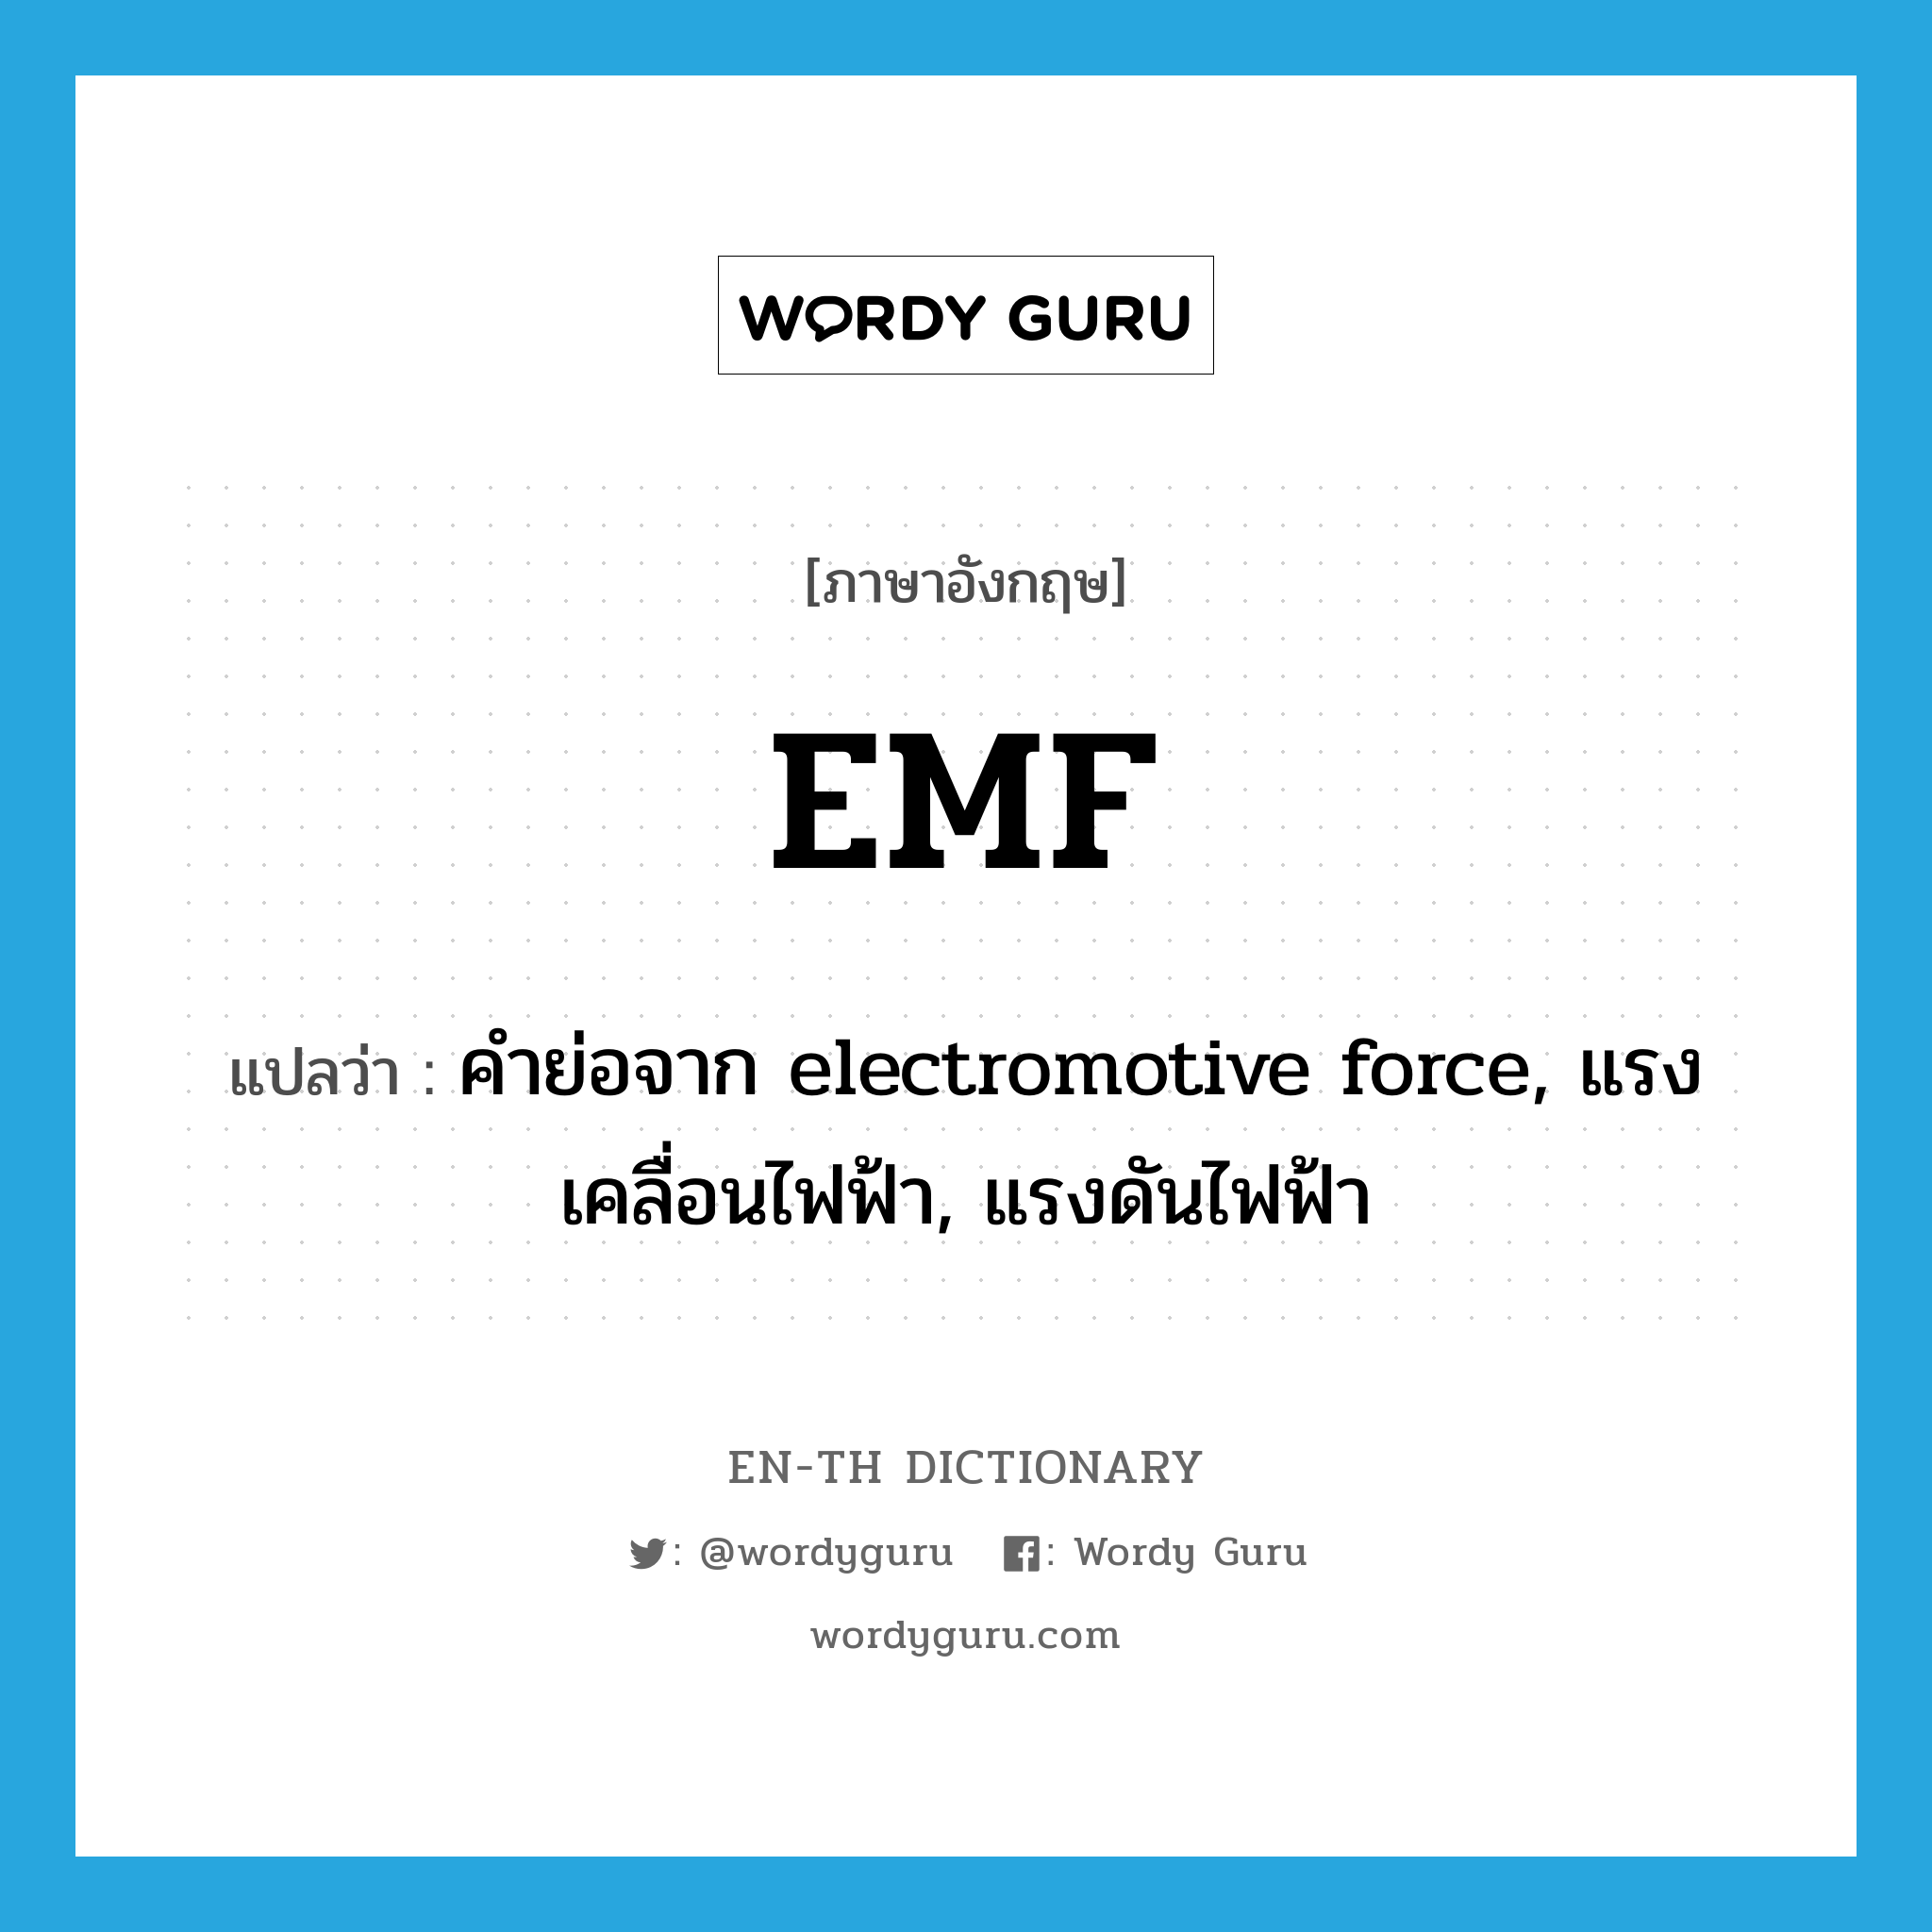 คำย่อจาก electromotive force, แรงเคลื่อนไฟฟ้า, แรงดันไฟฟ้า ภาษาอังกฤษ?, คำศัพท์ภาษาอังกฤษ คำย่อจาก electromotive force, แรงเคลื่อนไฟฟ้า, แรงดันไฟฟ้า แปลว่า EMF ประเภท ABBR หมวด ABBR